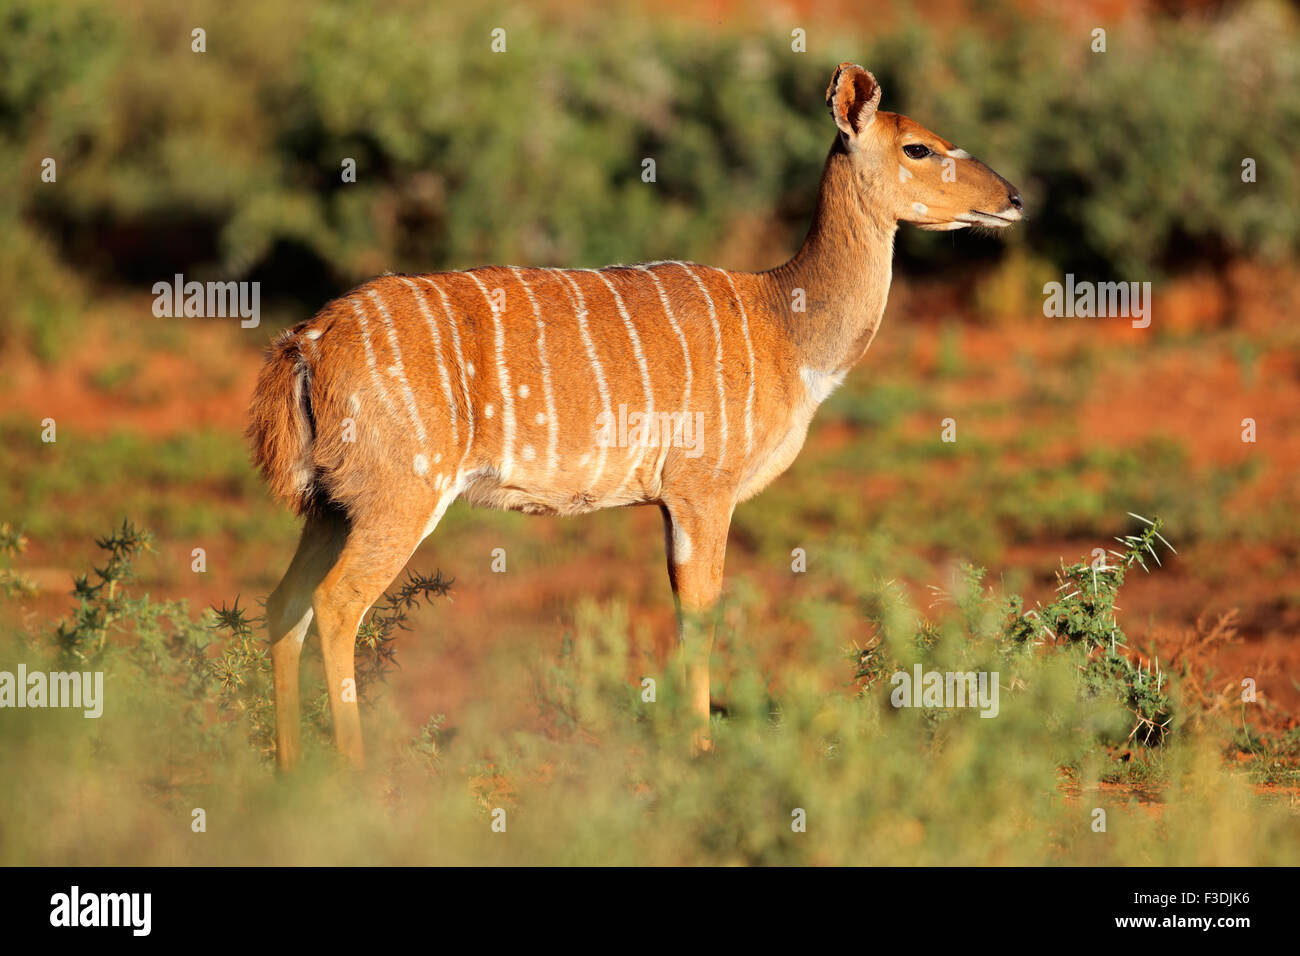 Female Nyala antelope (Tragelaphus angasii) in natural habitat, Mokala National Park, South Africa Stock Photo